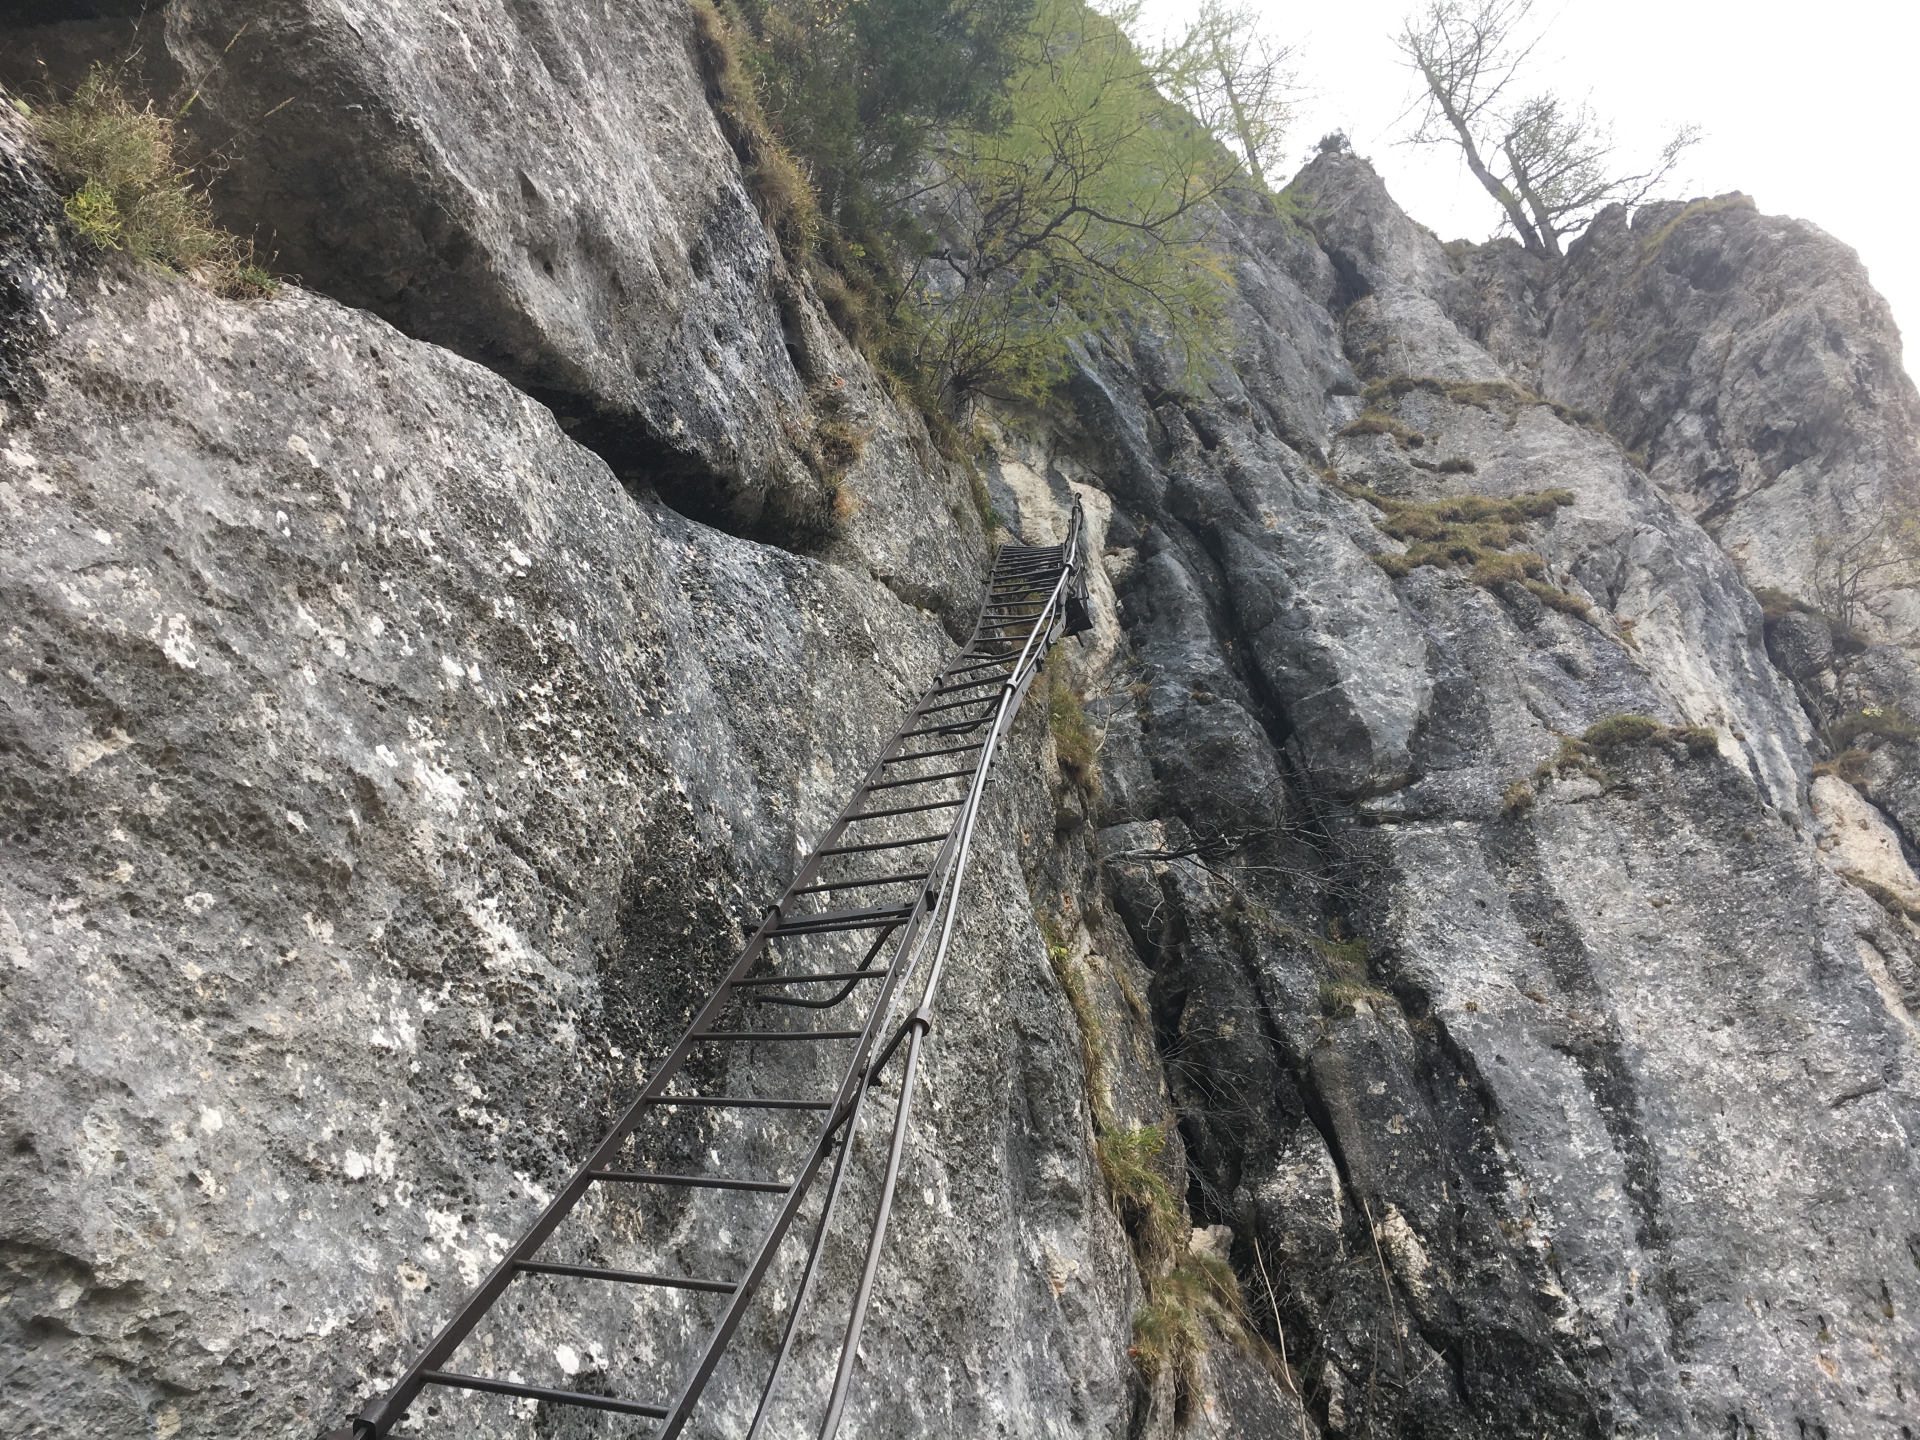 Iron ladder at the entrance of Alpenvereinssteig